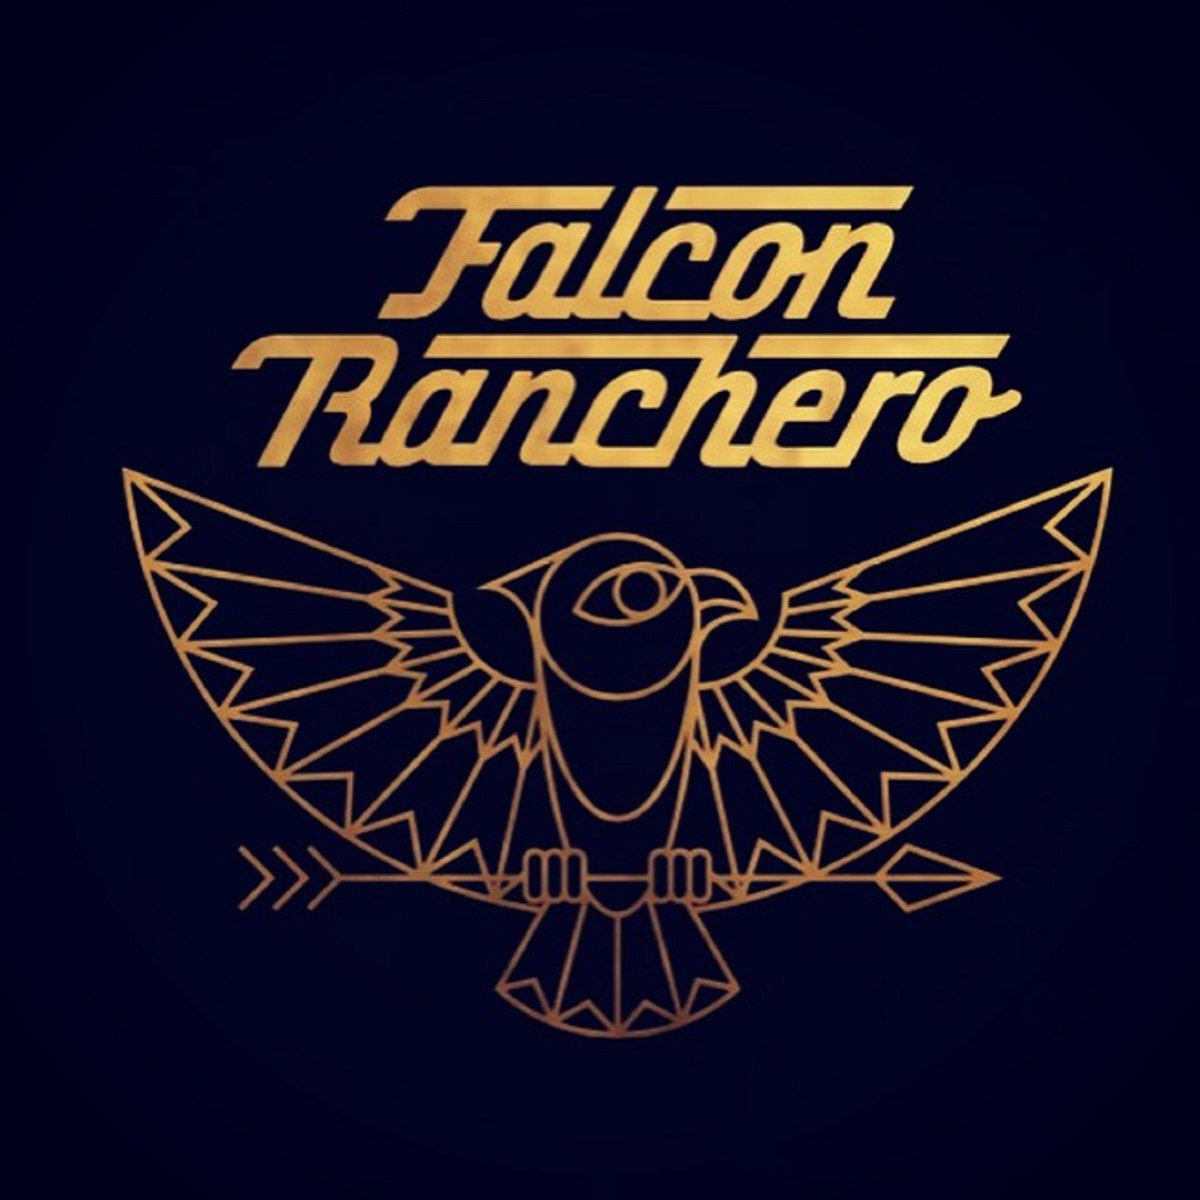 falcon-ranchero.jpg